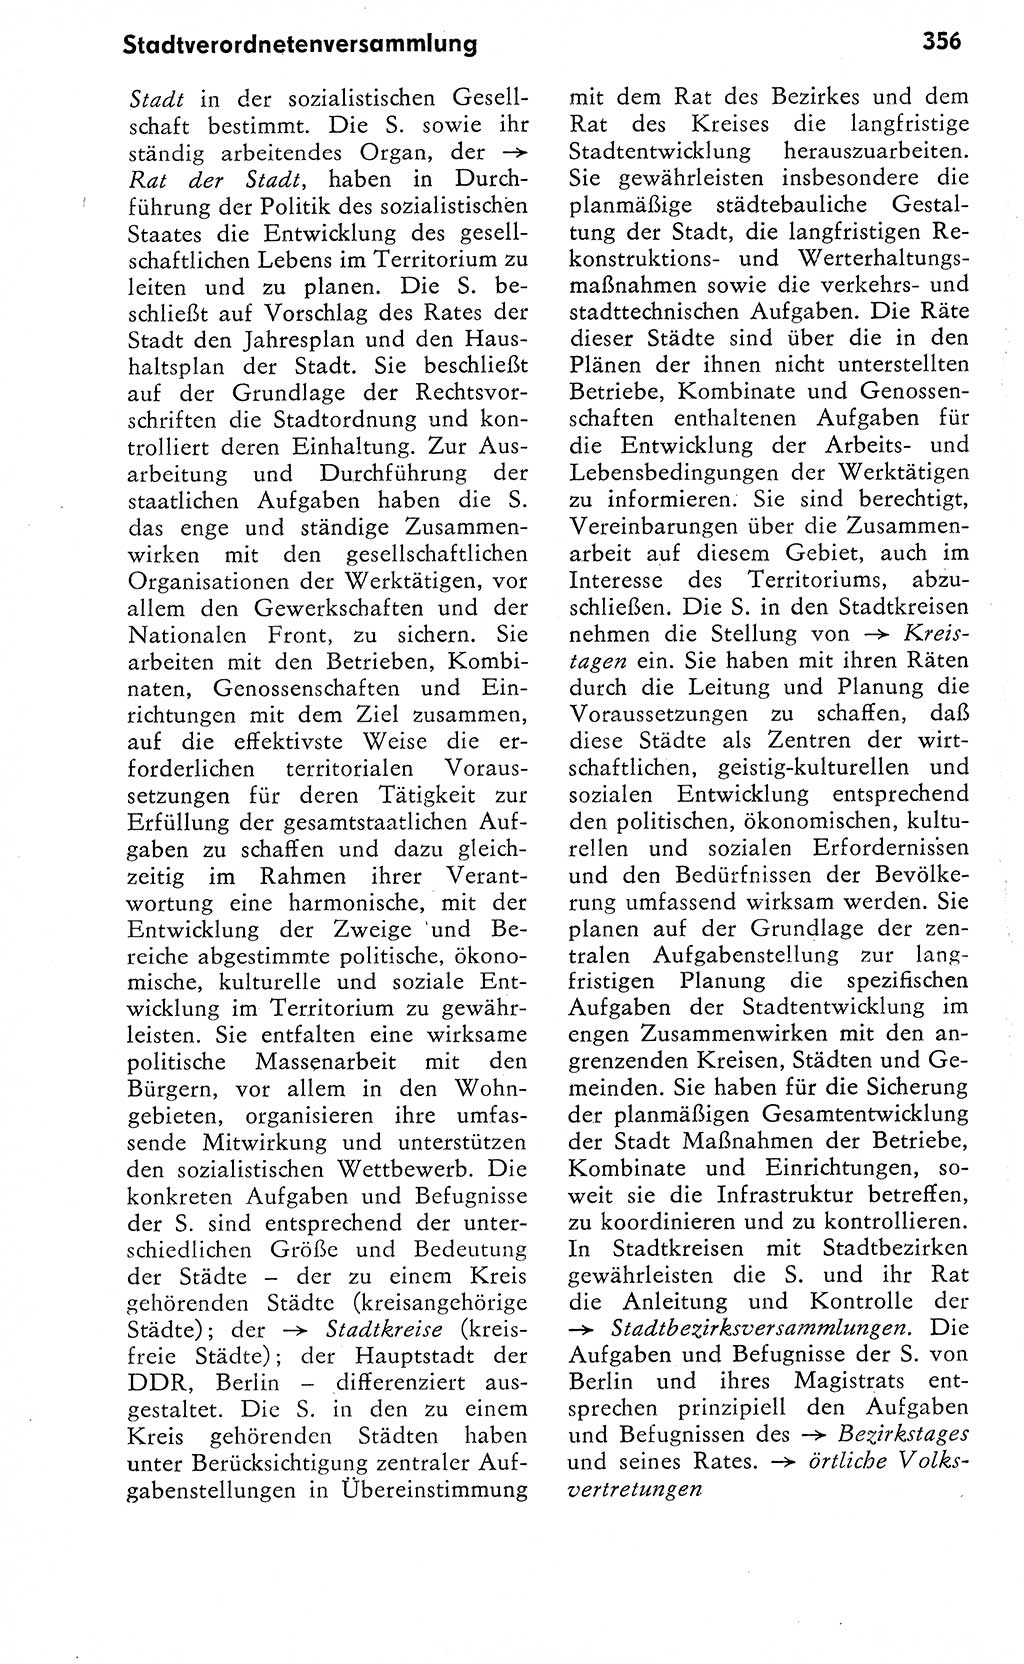 Wörterbuch zum sozialistischen Staat [Deutsche Demokratische Republik (DDR)] 1974, Seite 356 (Wb. soz. St. DDR 1974, S. 356)